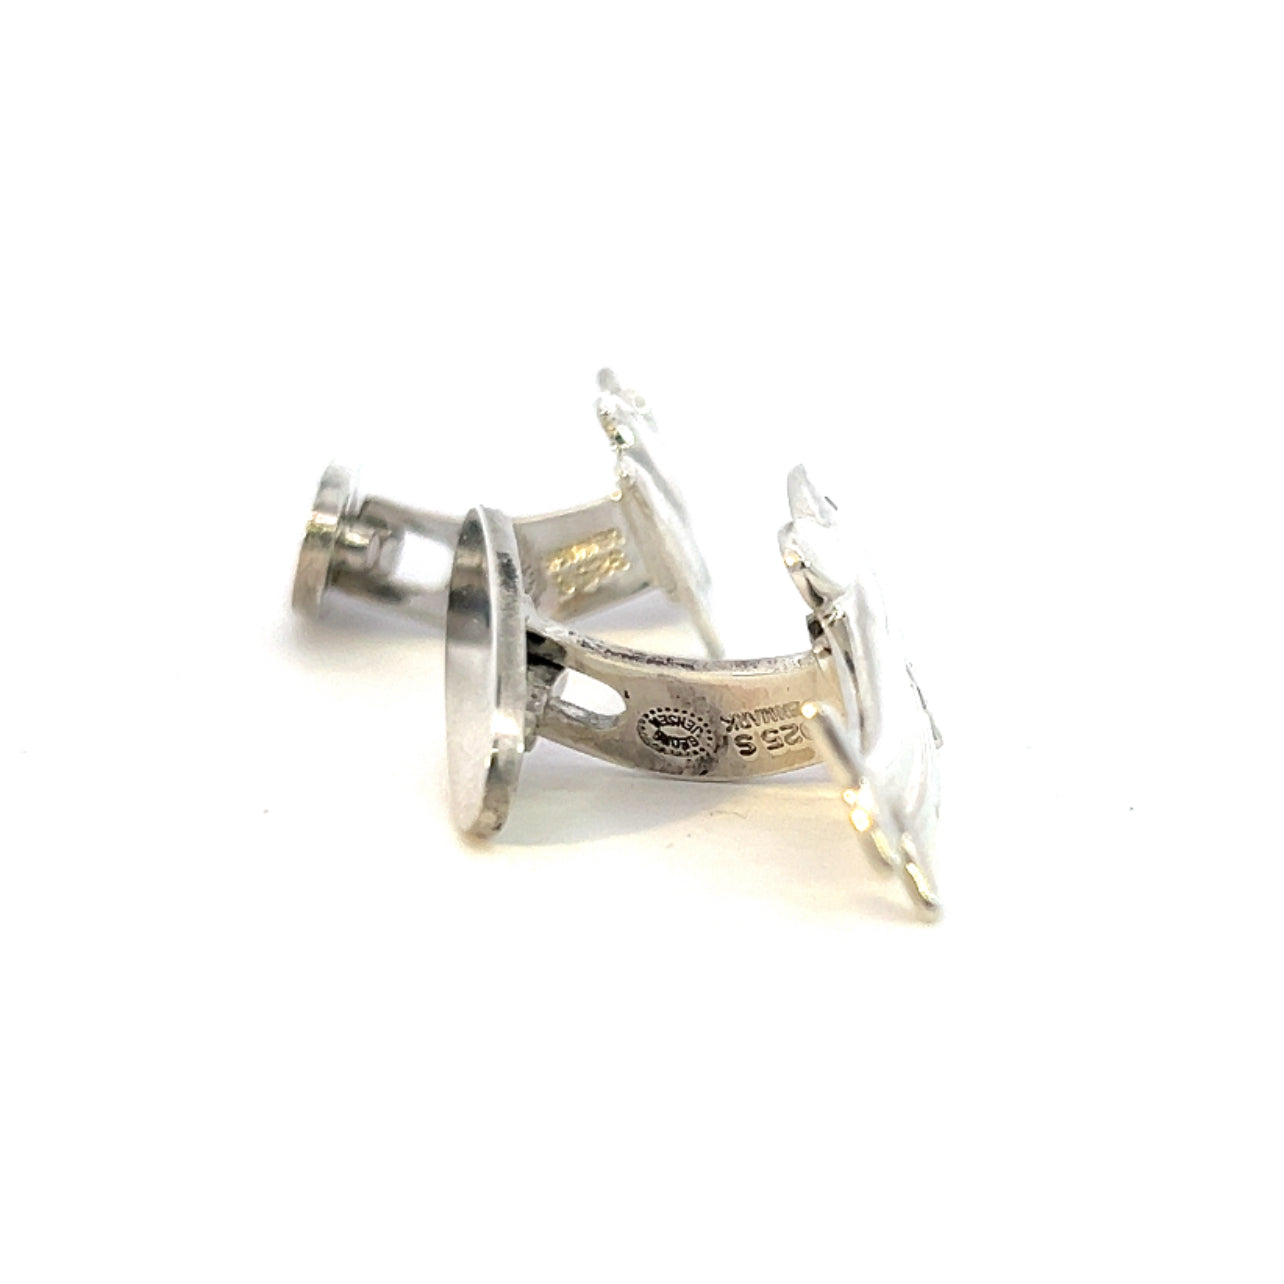 Georg Jensen Estate Dolphin Cufflinks Sterling Silver GJ21 - Certified Fine Jewelry